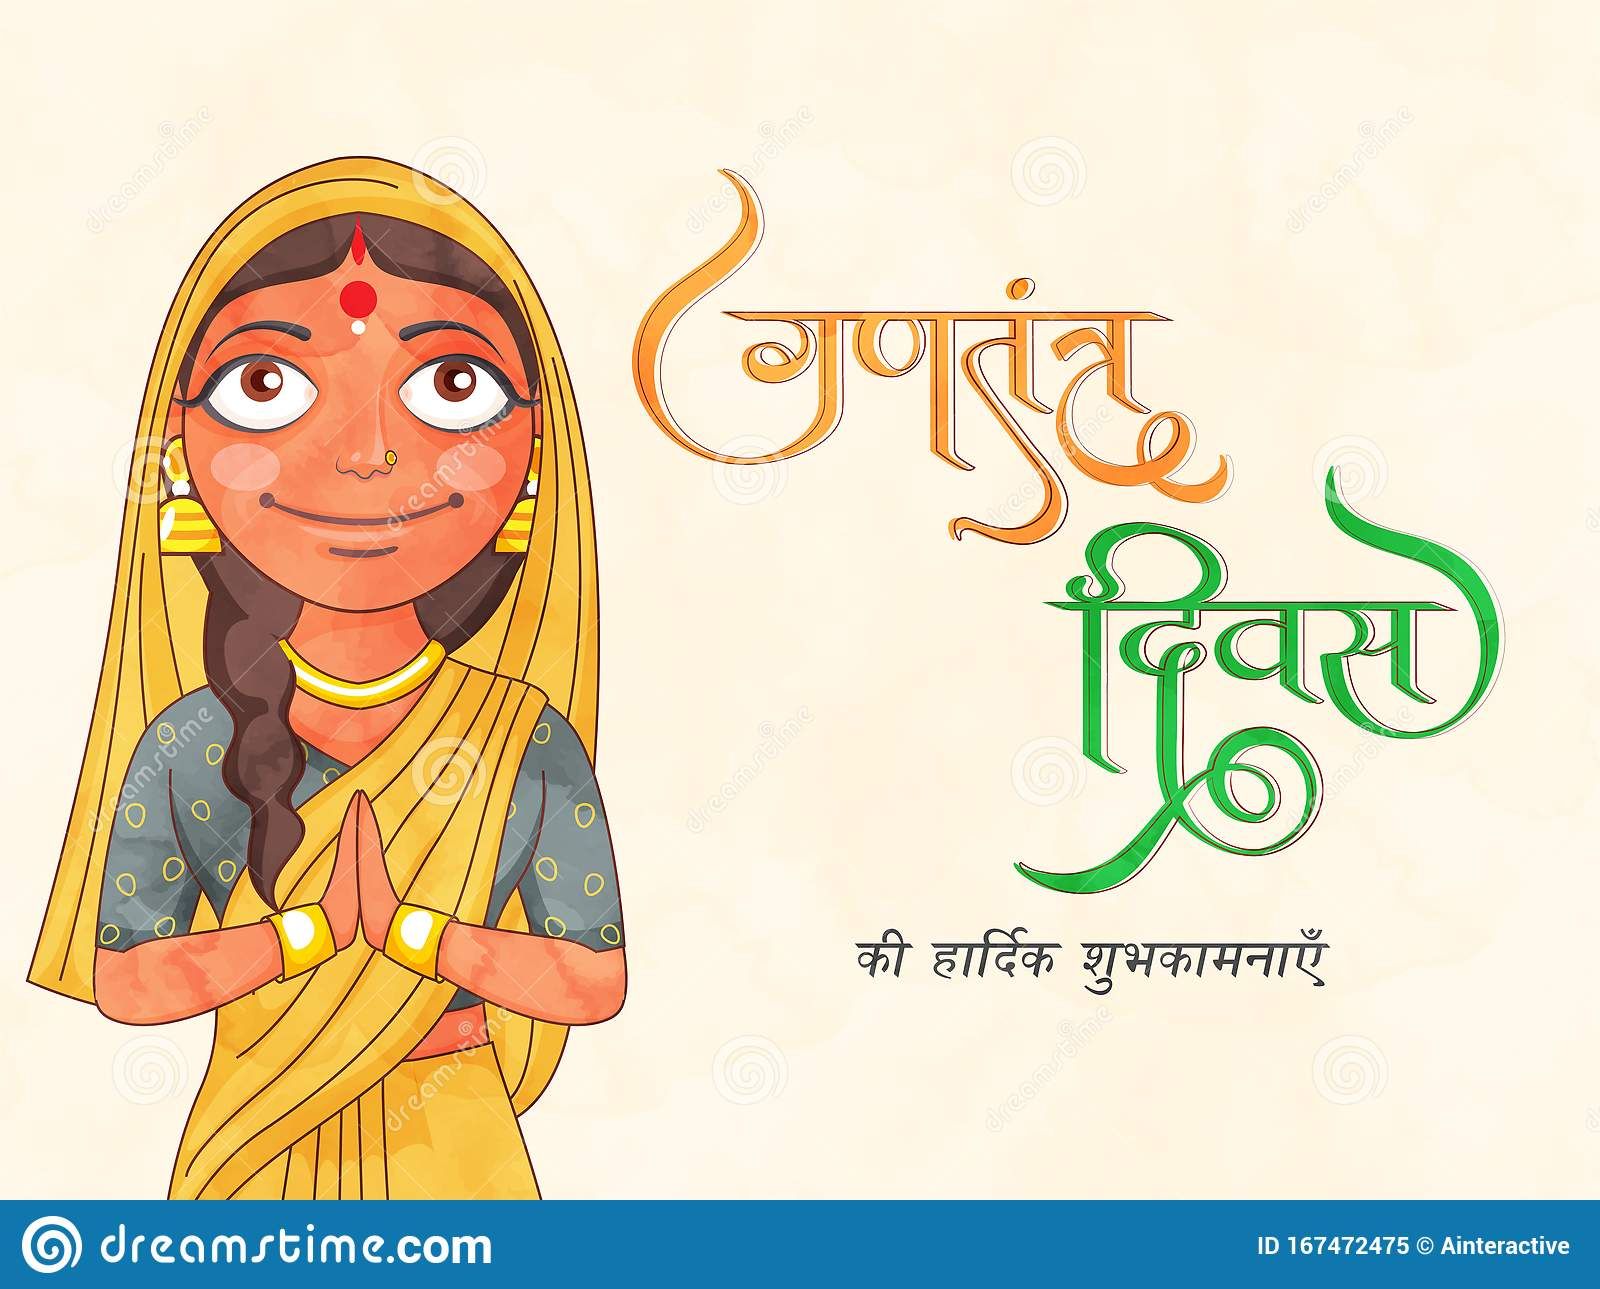 Hindi Font Gantantra Diwas Ki Hardik Shubhkamnaye and Indian Woman